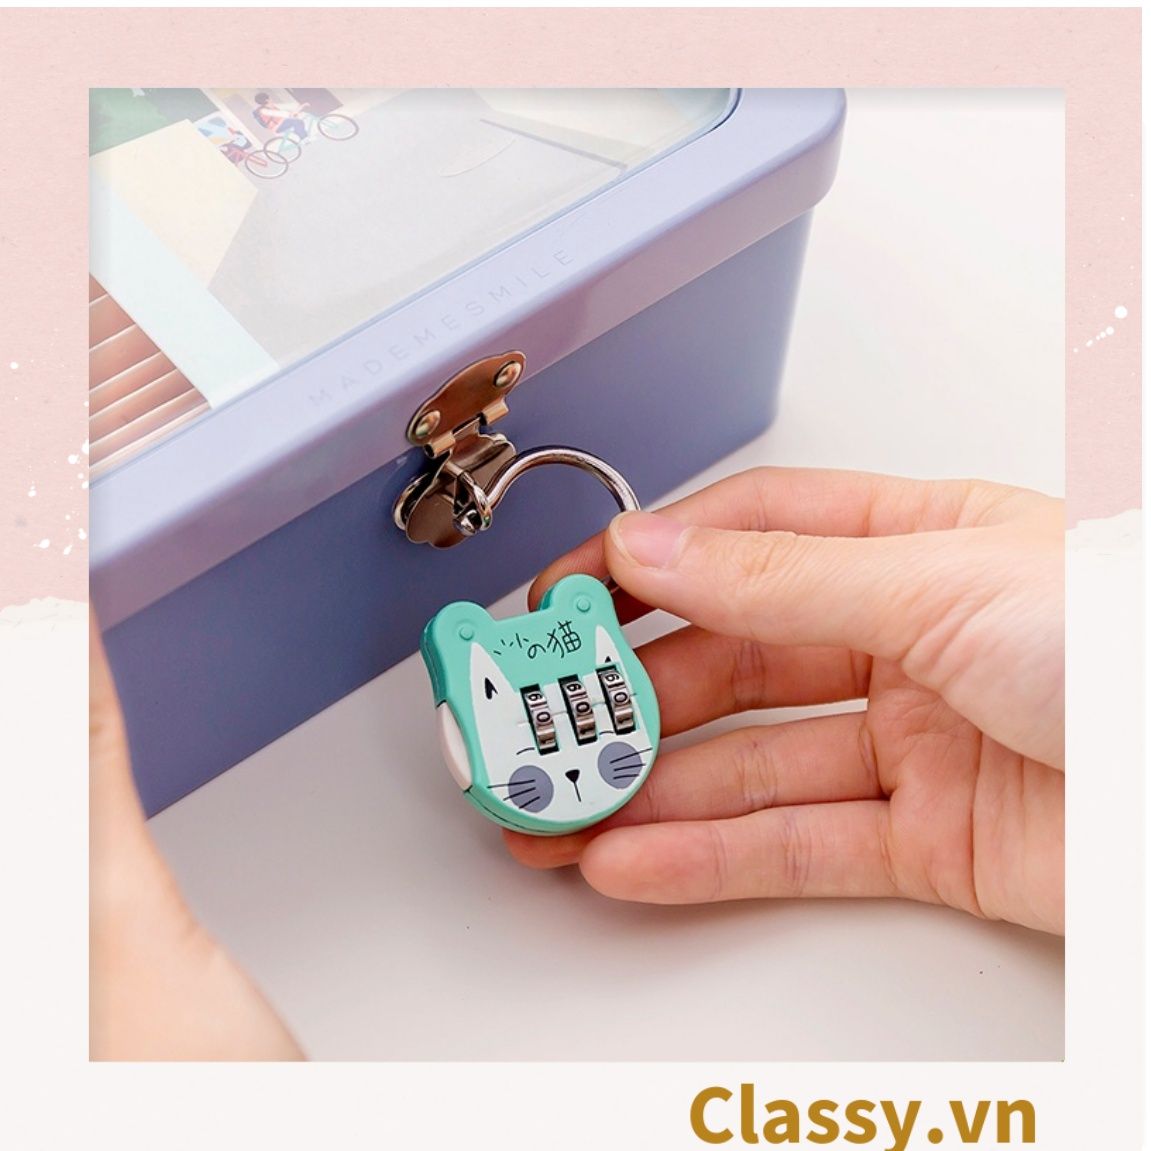  Ổ khóa mini nhiều màu dễ thương, thích hợp khóa vali, khóa tủ PK1286 